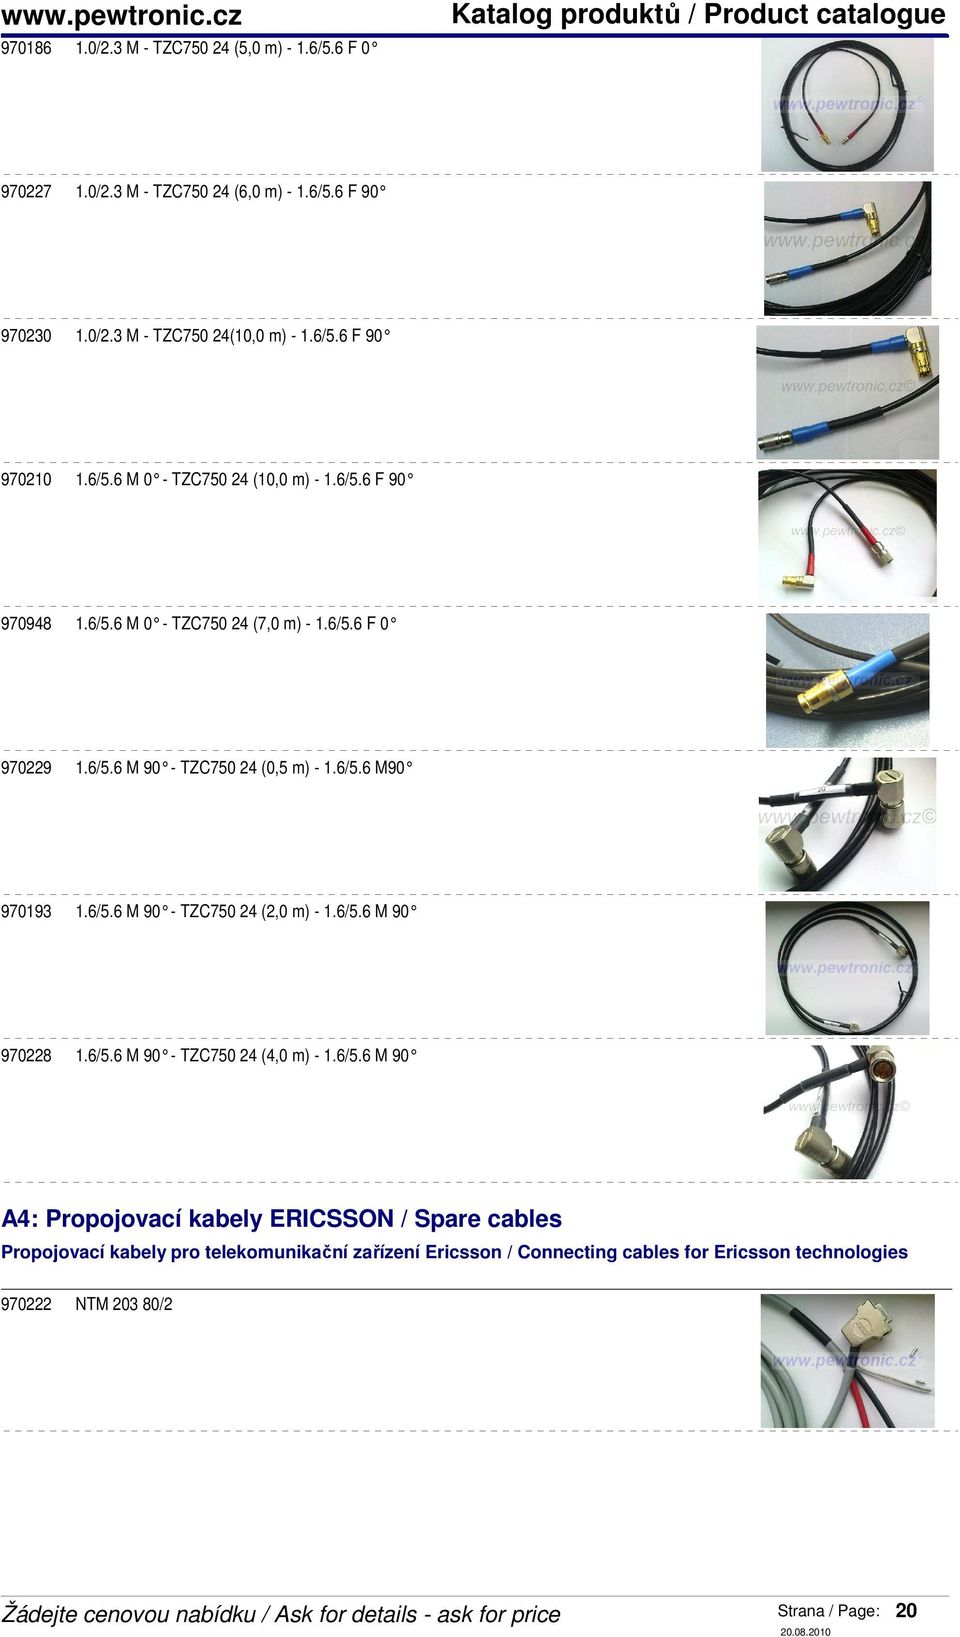 6/5.6 M 90 - TZC750 24 (2,0 m) - 1.6/5.6 M 90 970228 1.6/5.6 M 90 - TZC750 24 (4,0 m) - 1.6/5.6 M 90 A4: Propojovací kabely ERICSSON / Spare cables